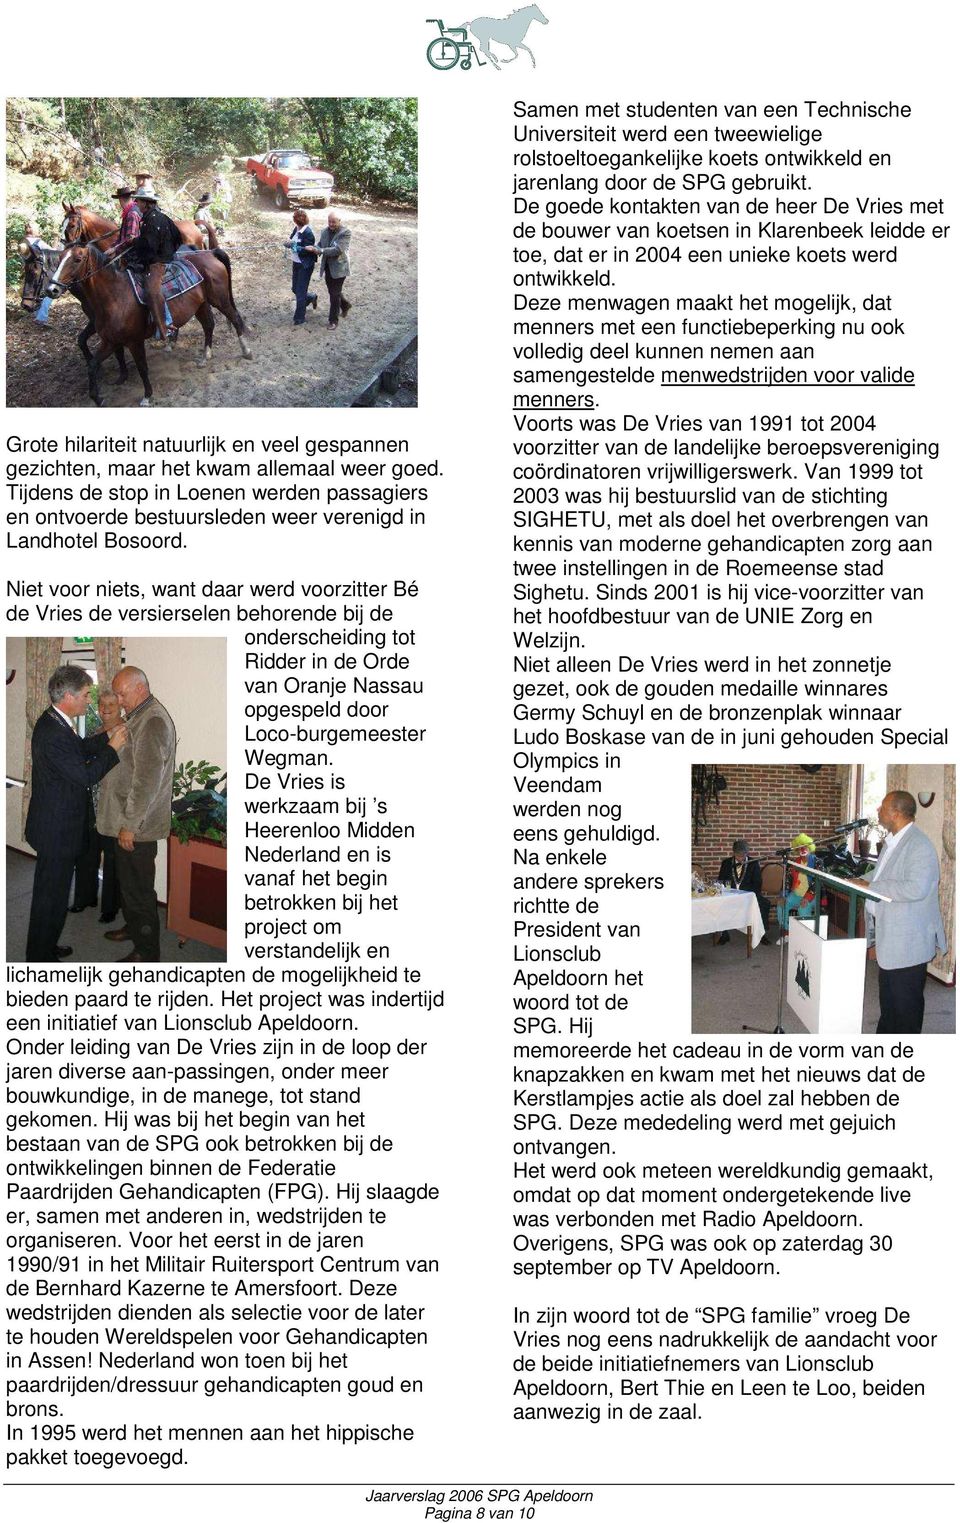 De Vries is werkzaam bij s Heerenloo Midden Nederland en is vanaf het begin betrokken bij het project om verstandelijk en lichamelijk gehandicapten de mogelijkheid te bieden paard te rijden.